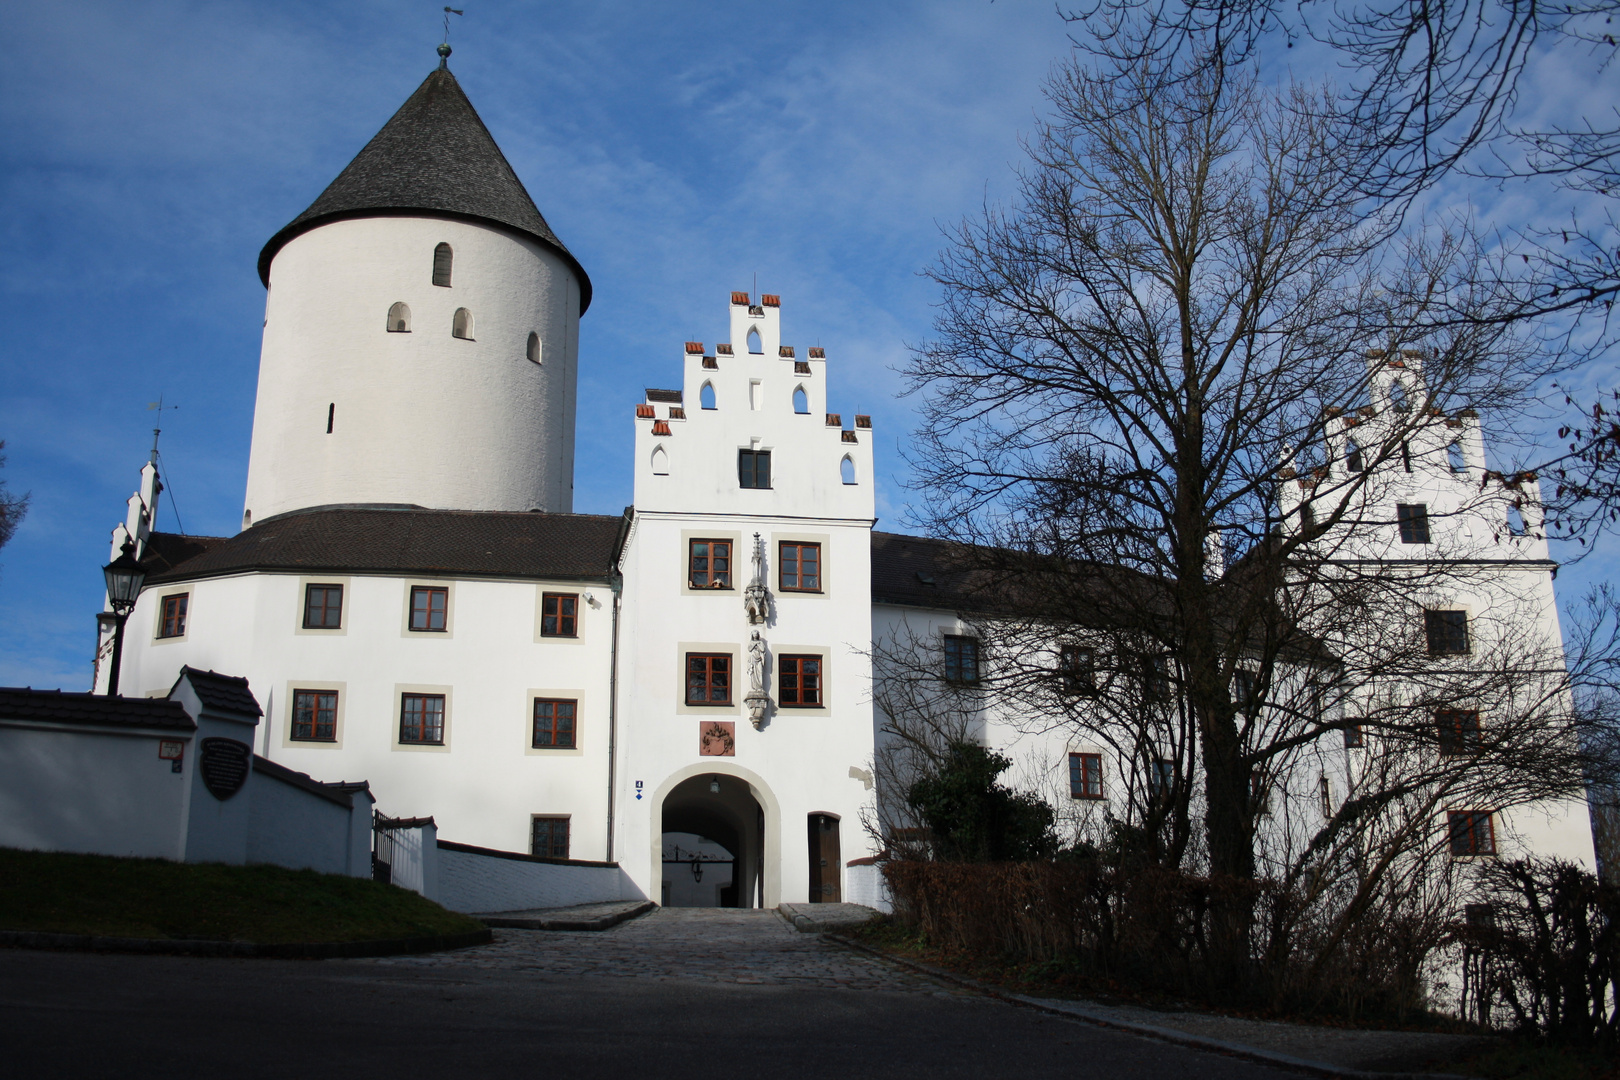 Schloss Kronwinkel